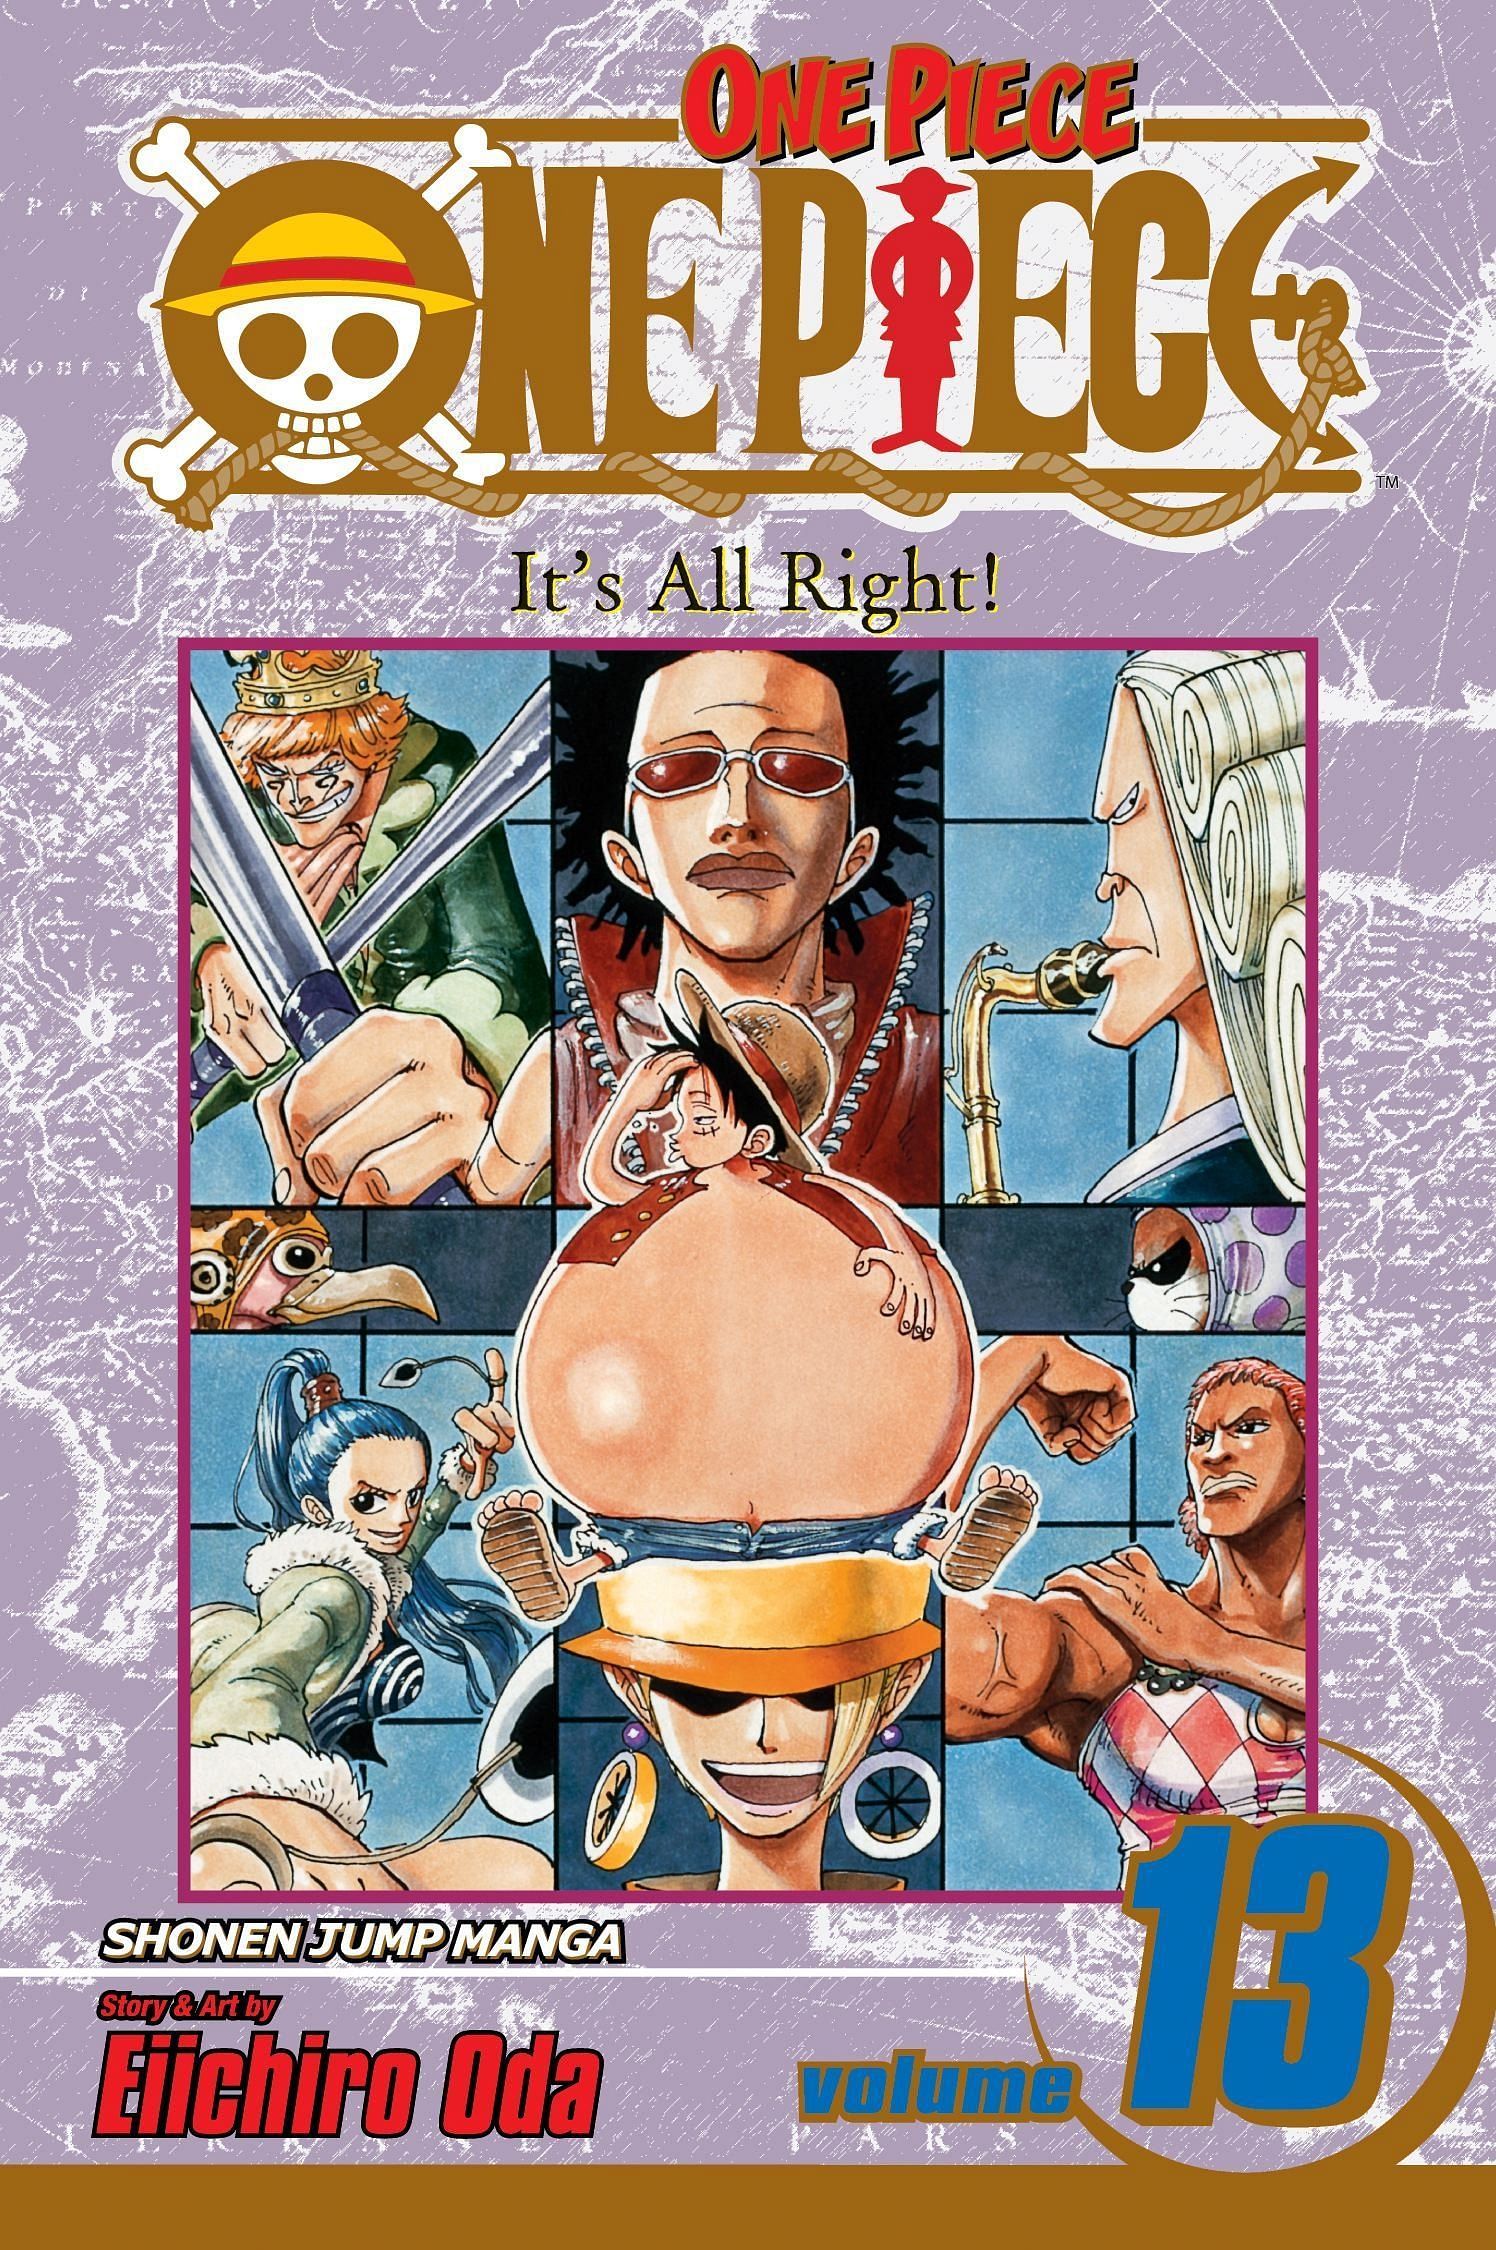 The cover art for One Piece Volume 13 (Image via Shueisha)